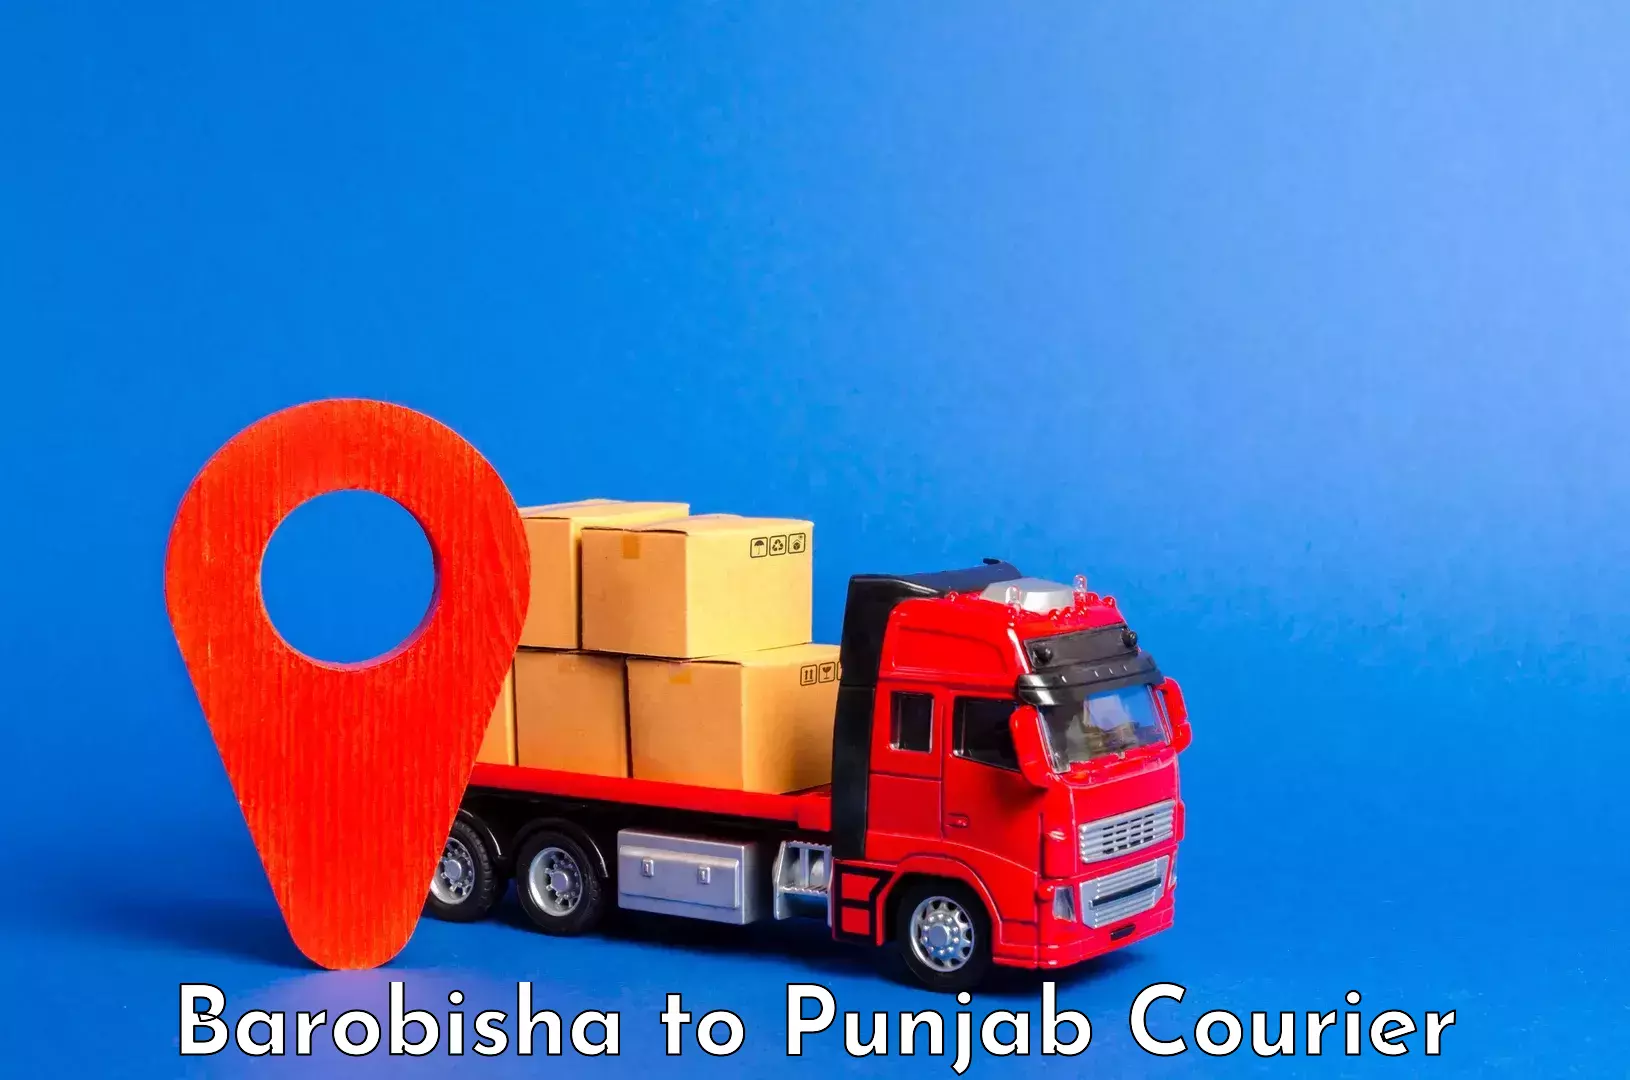 Efficient baggage courier system Barobisha to Dinanagar